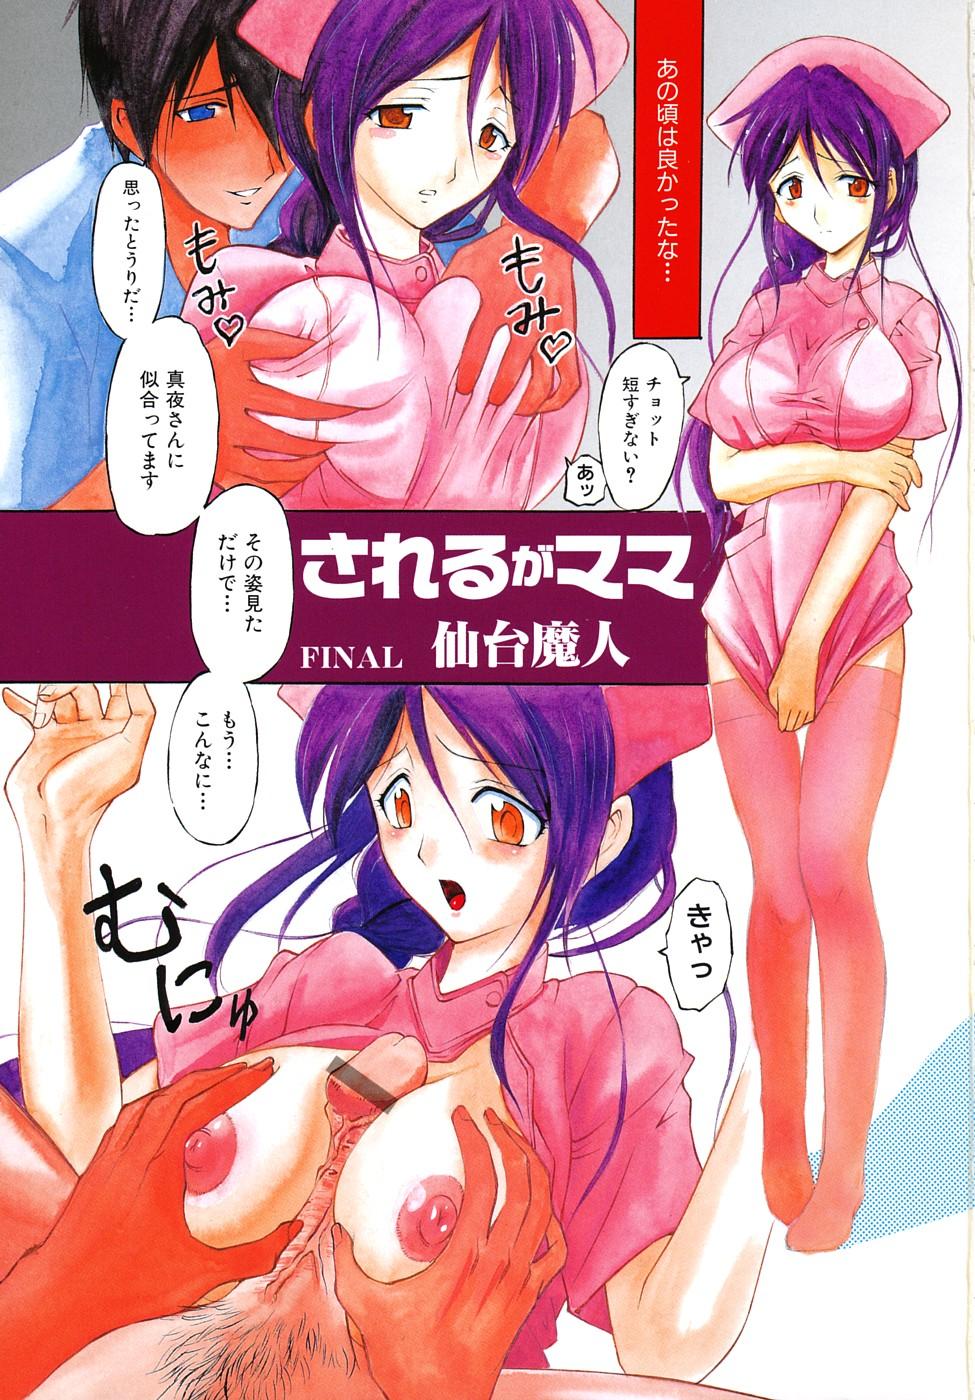 Nalgas Geki Yaba Anthology Vol. 1 - Naka ni Dashite yo Skirt - Page 4